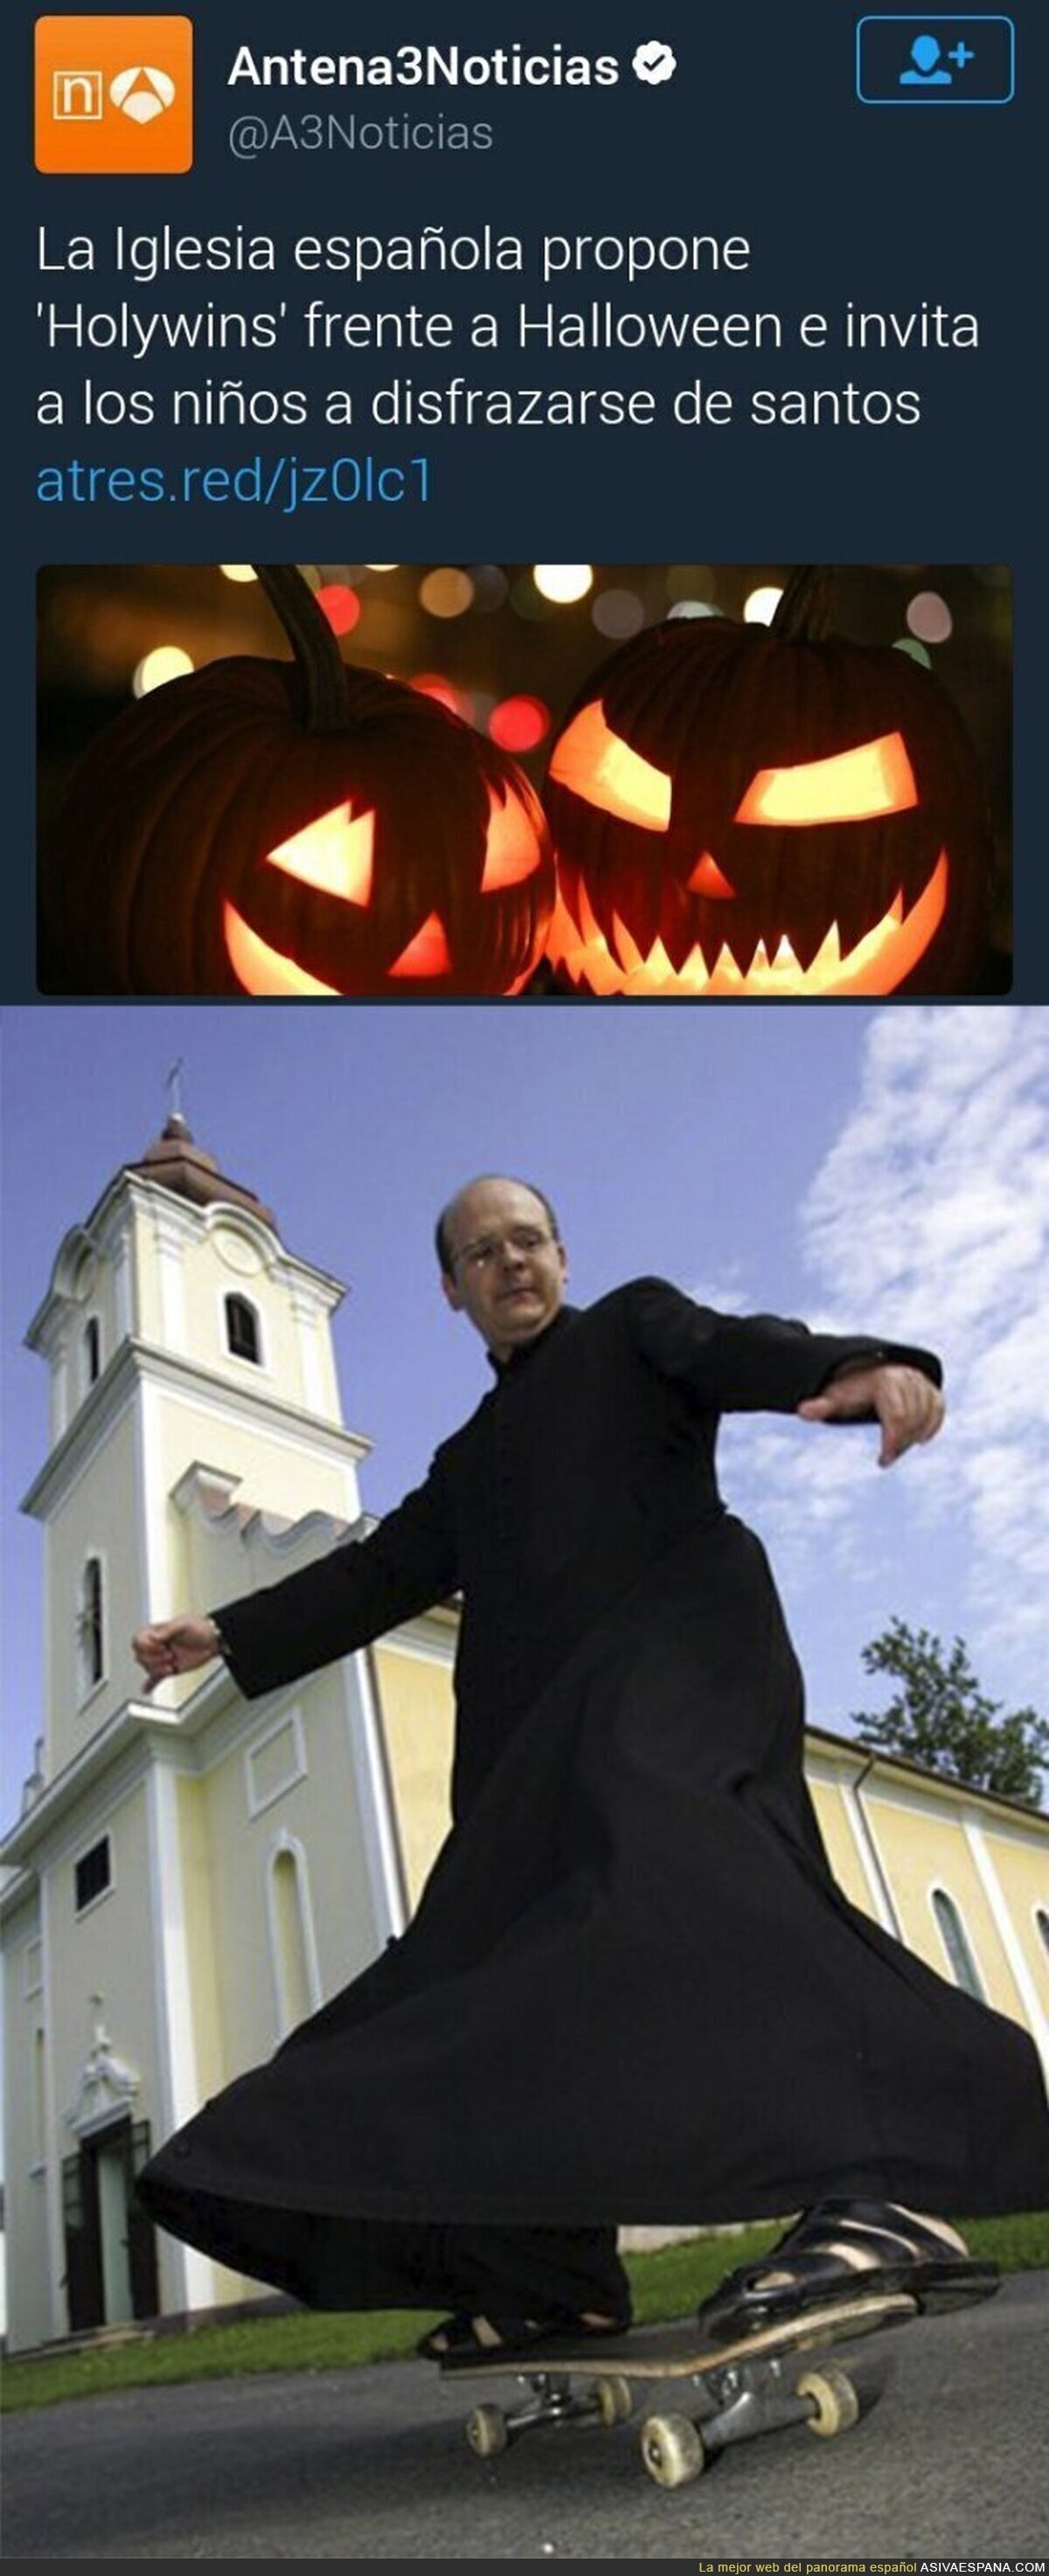 La Iglesia española propone un Halloween propio de nuestro país